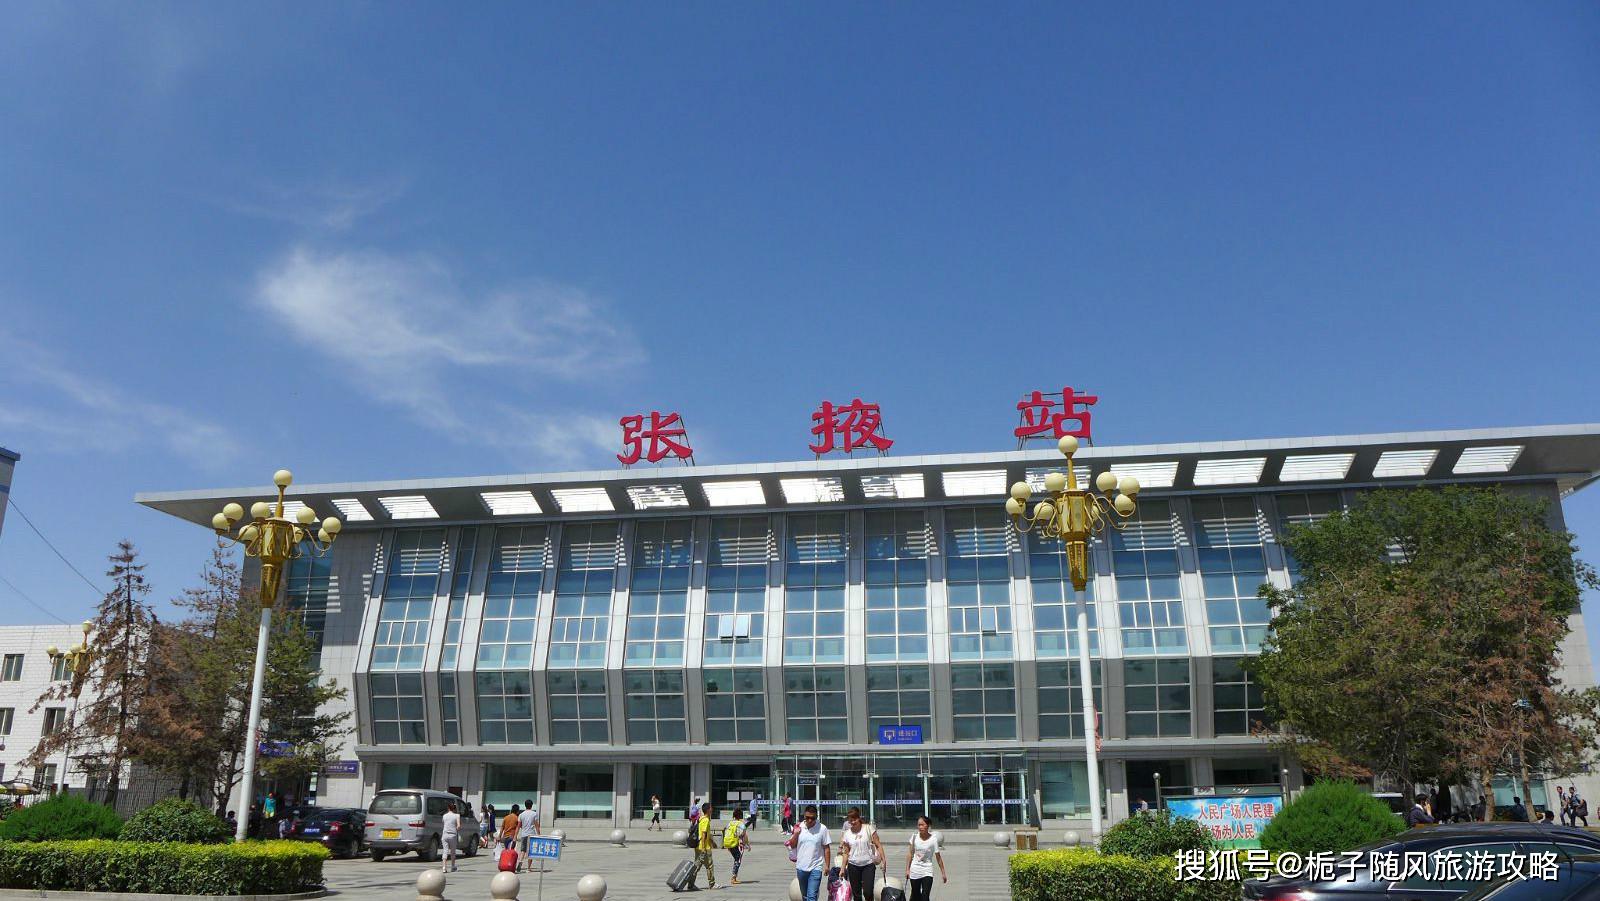 原创甘肃省张掖市主要的三座火车站一览